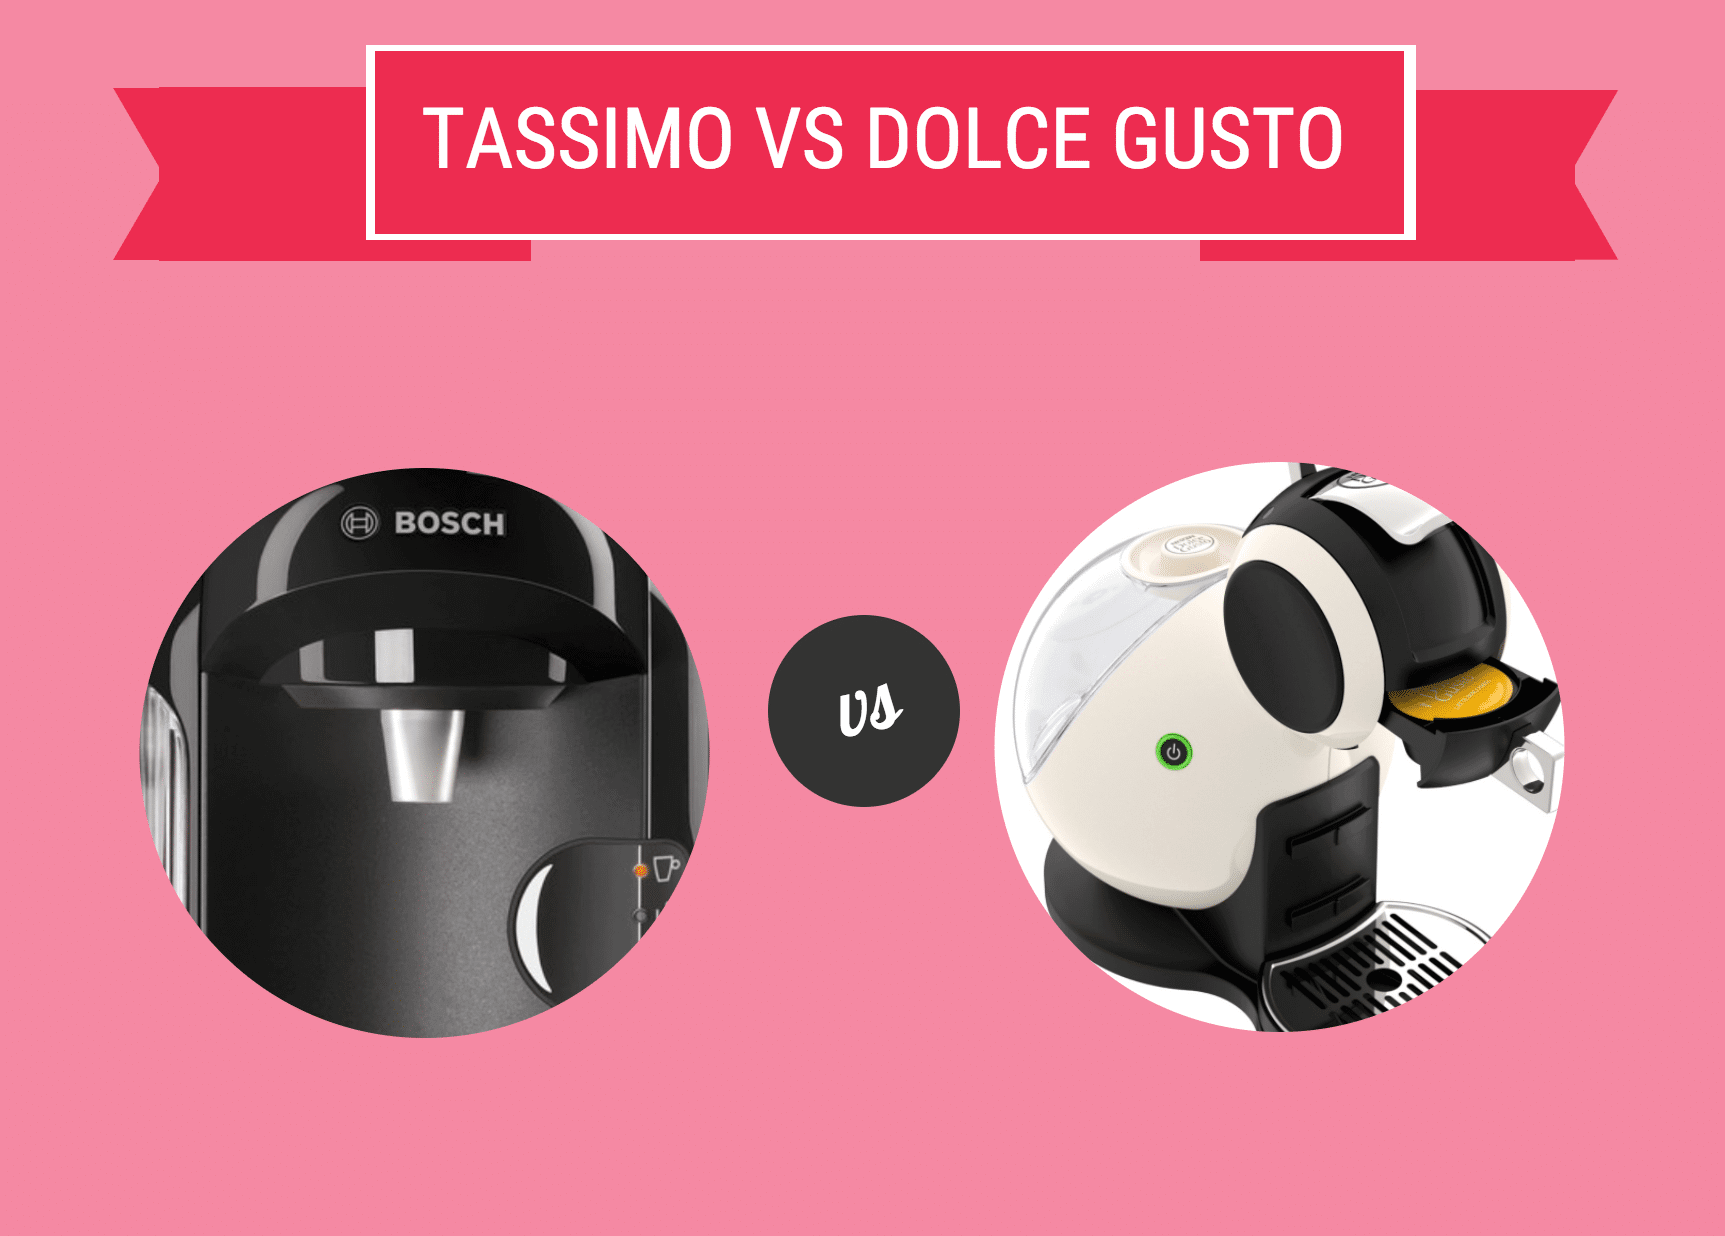 Tassimo vs Dolce Gusto Image